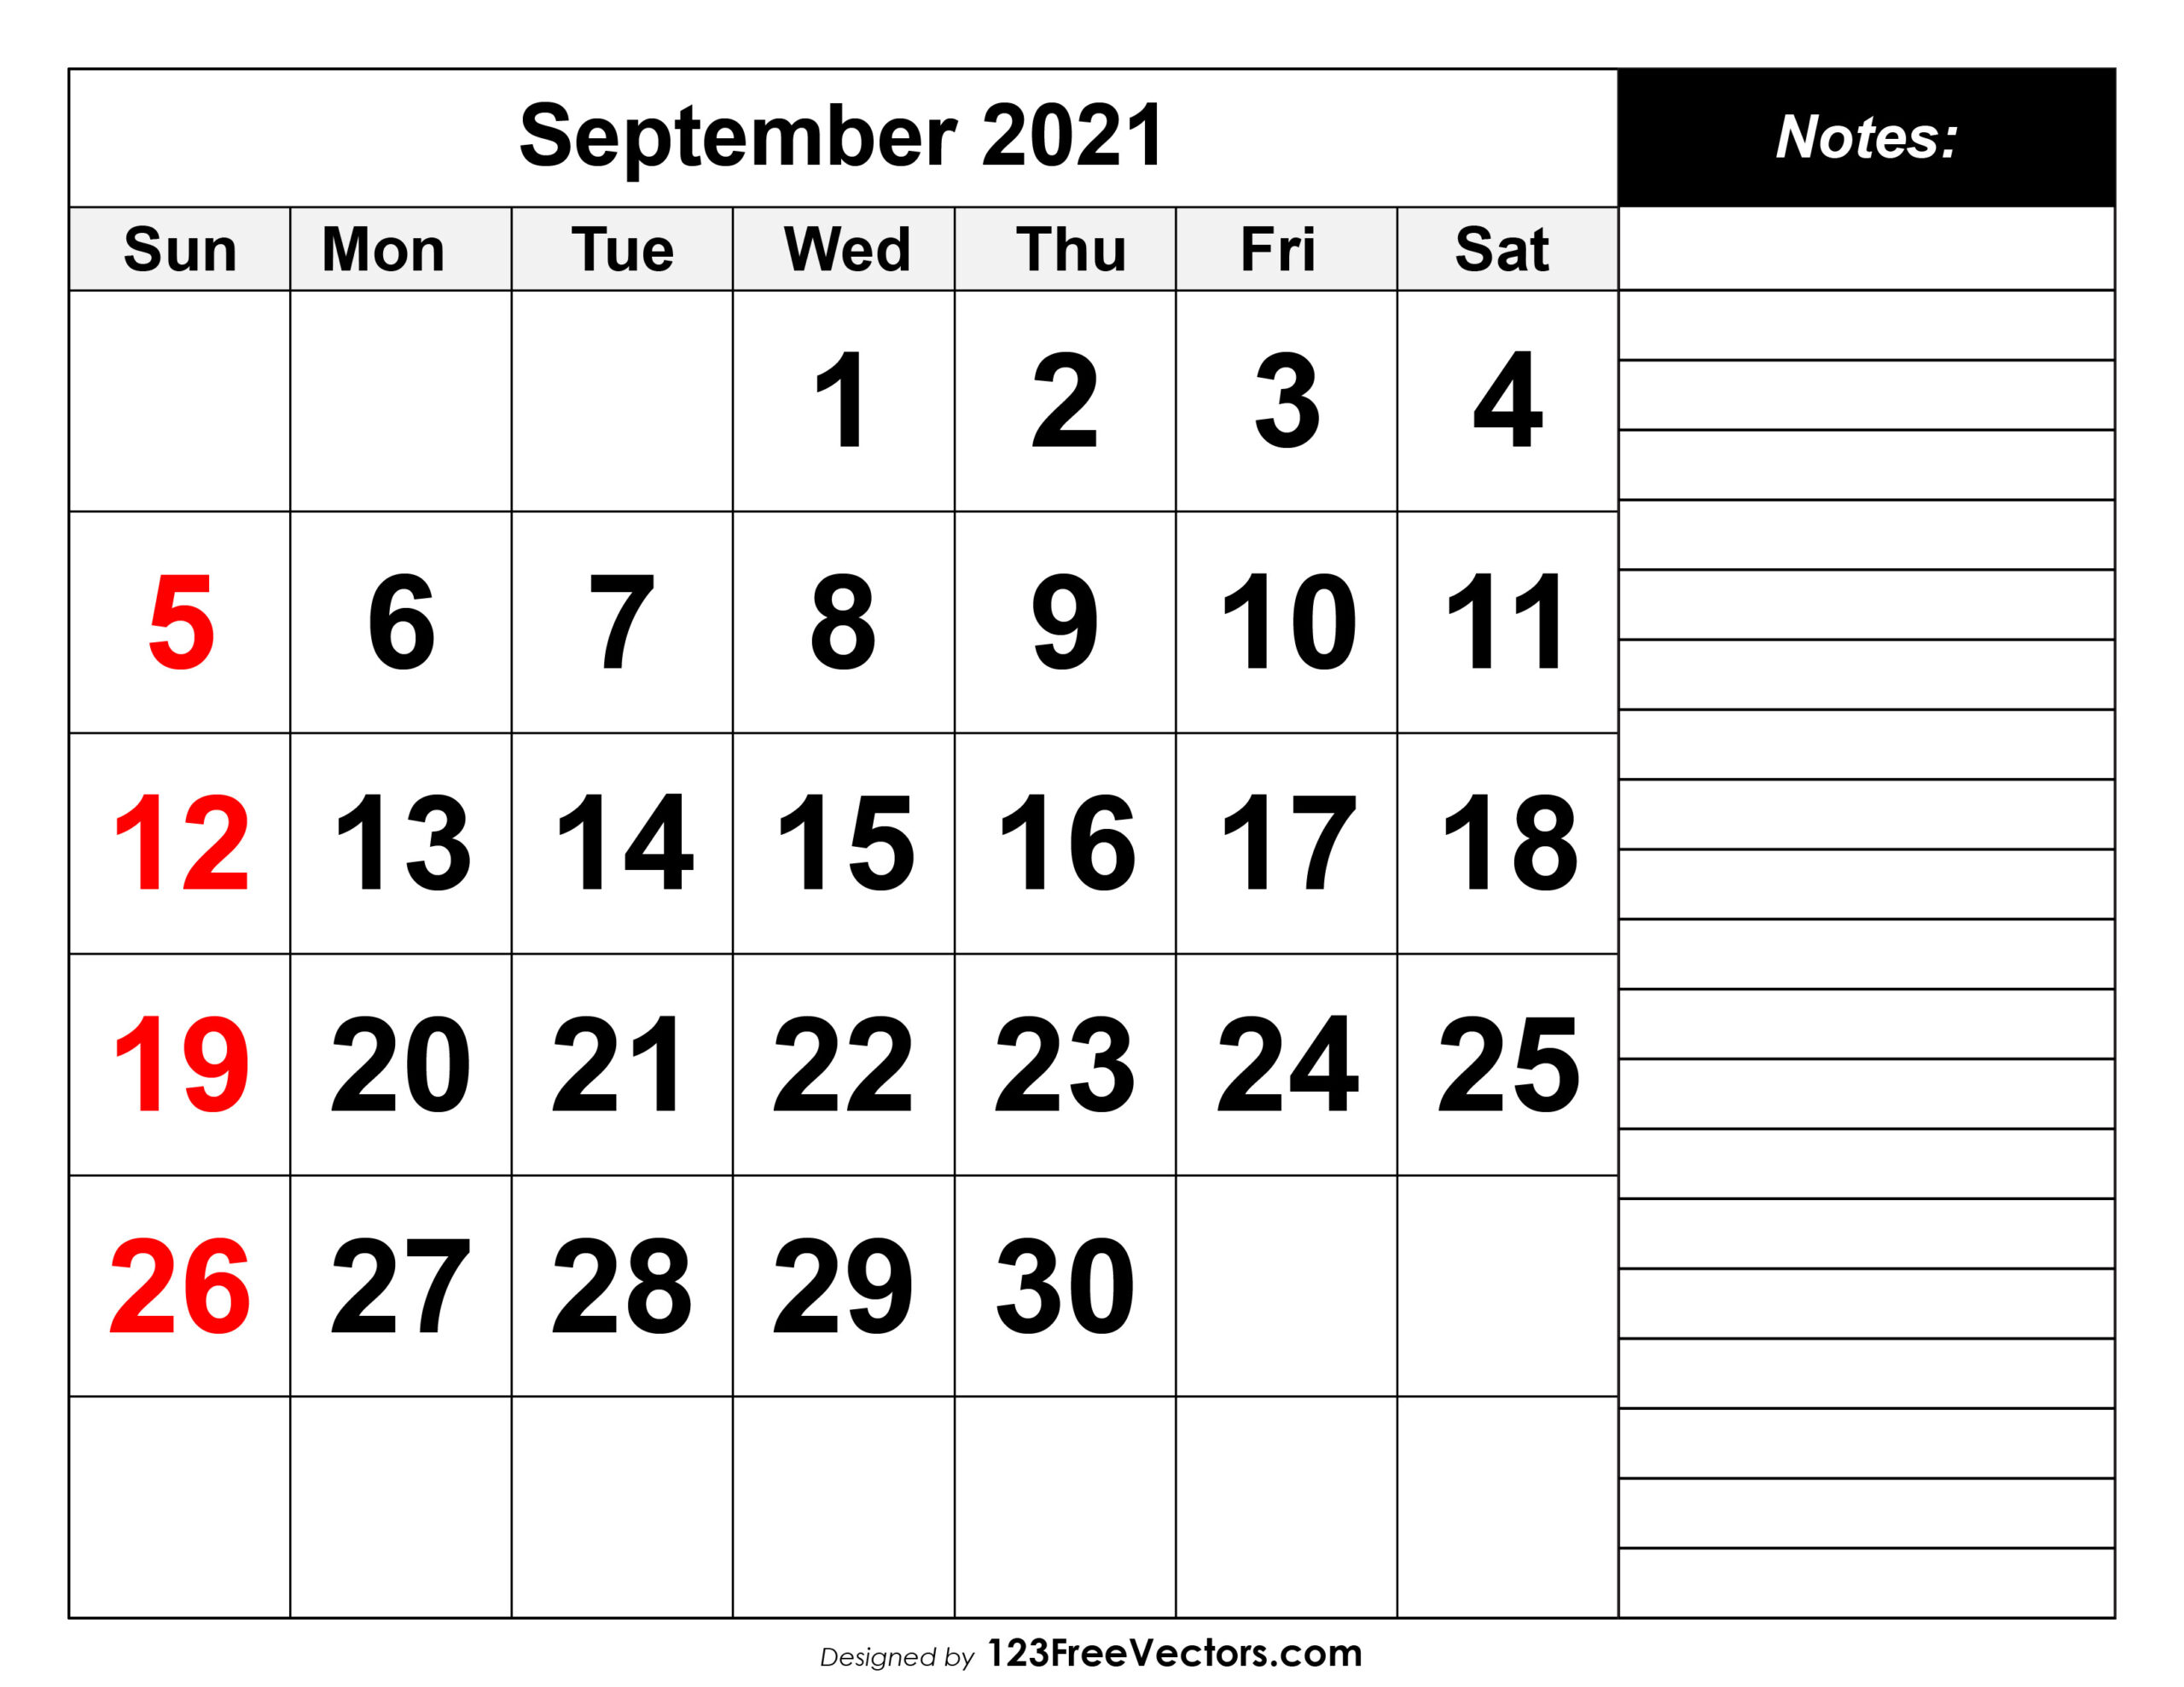 Free September 2021 Printable Calendar-Monday - Friday Work Calender For September 2021